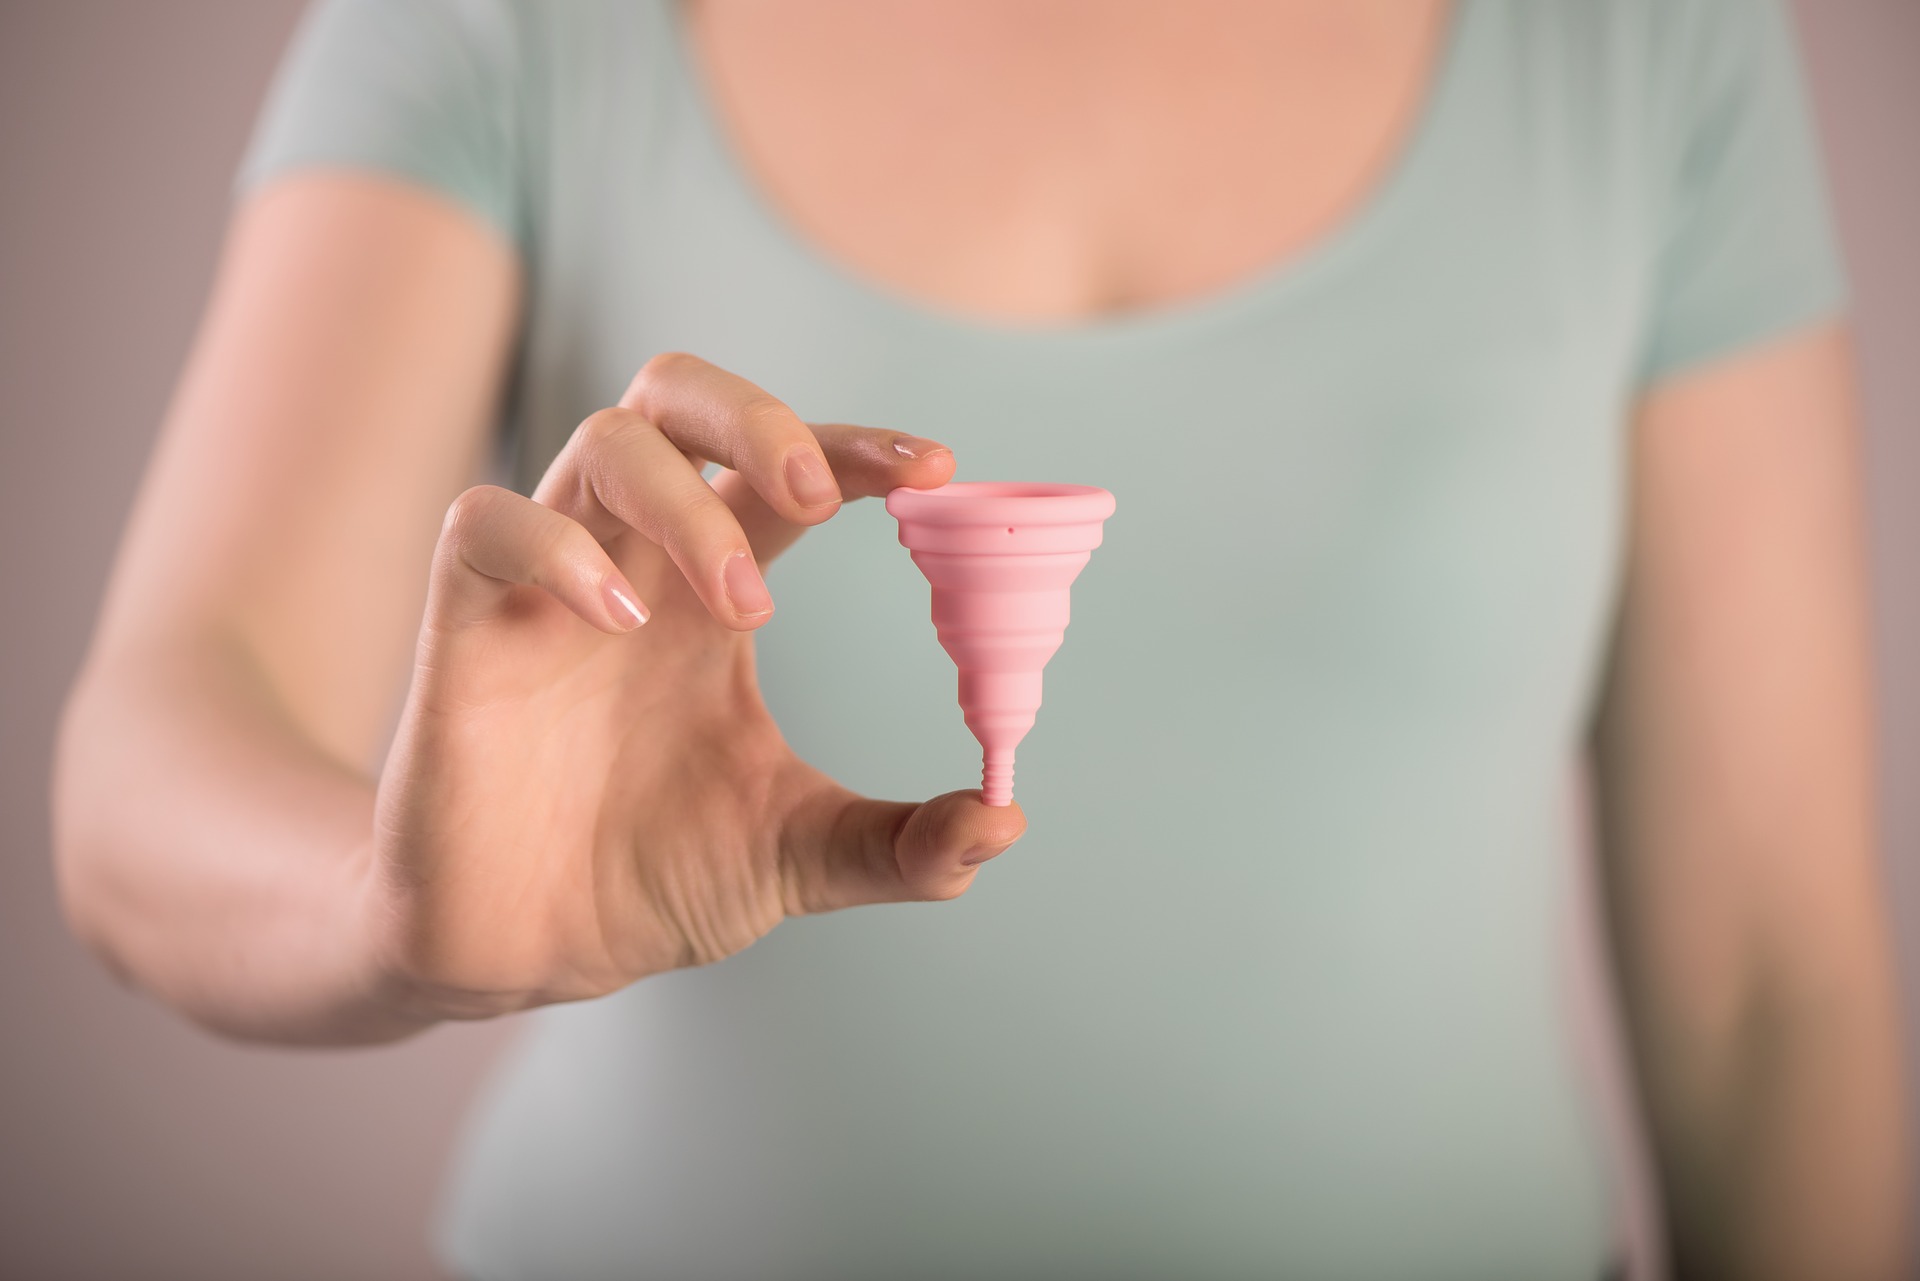 Copa menstrual: todo lo que tienes que saber